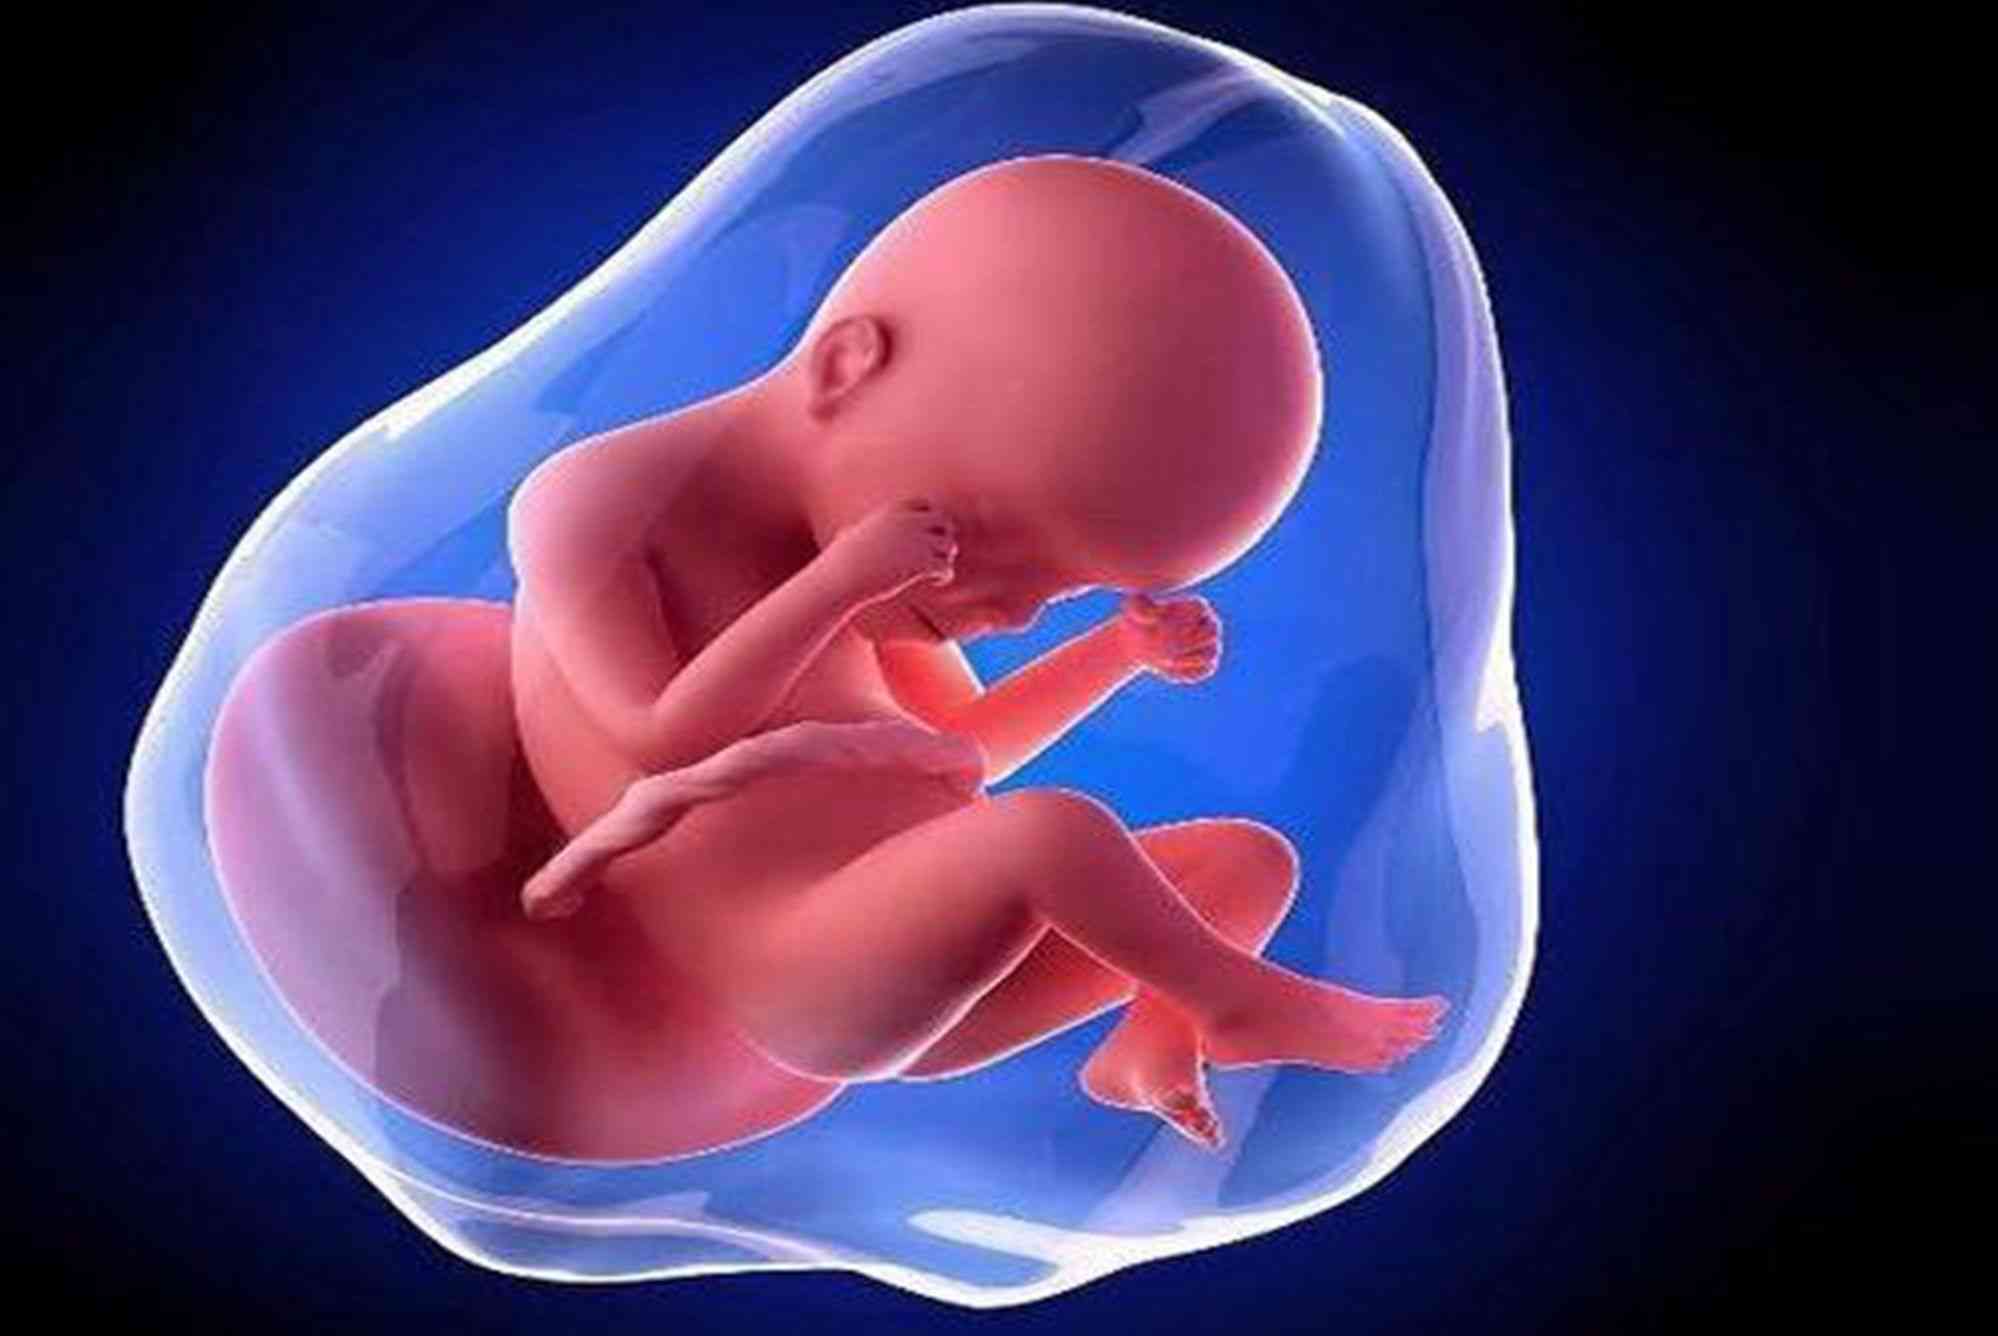 胎儿增大可能导致孕妇左肋疼痛